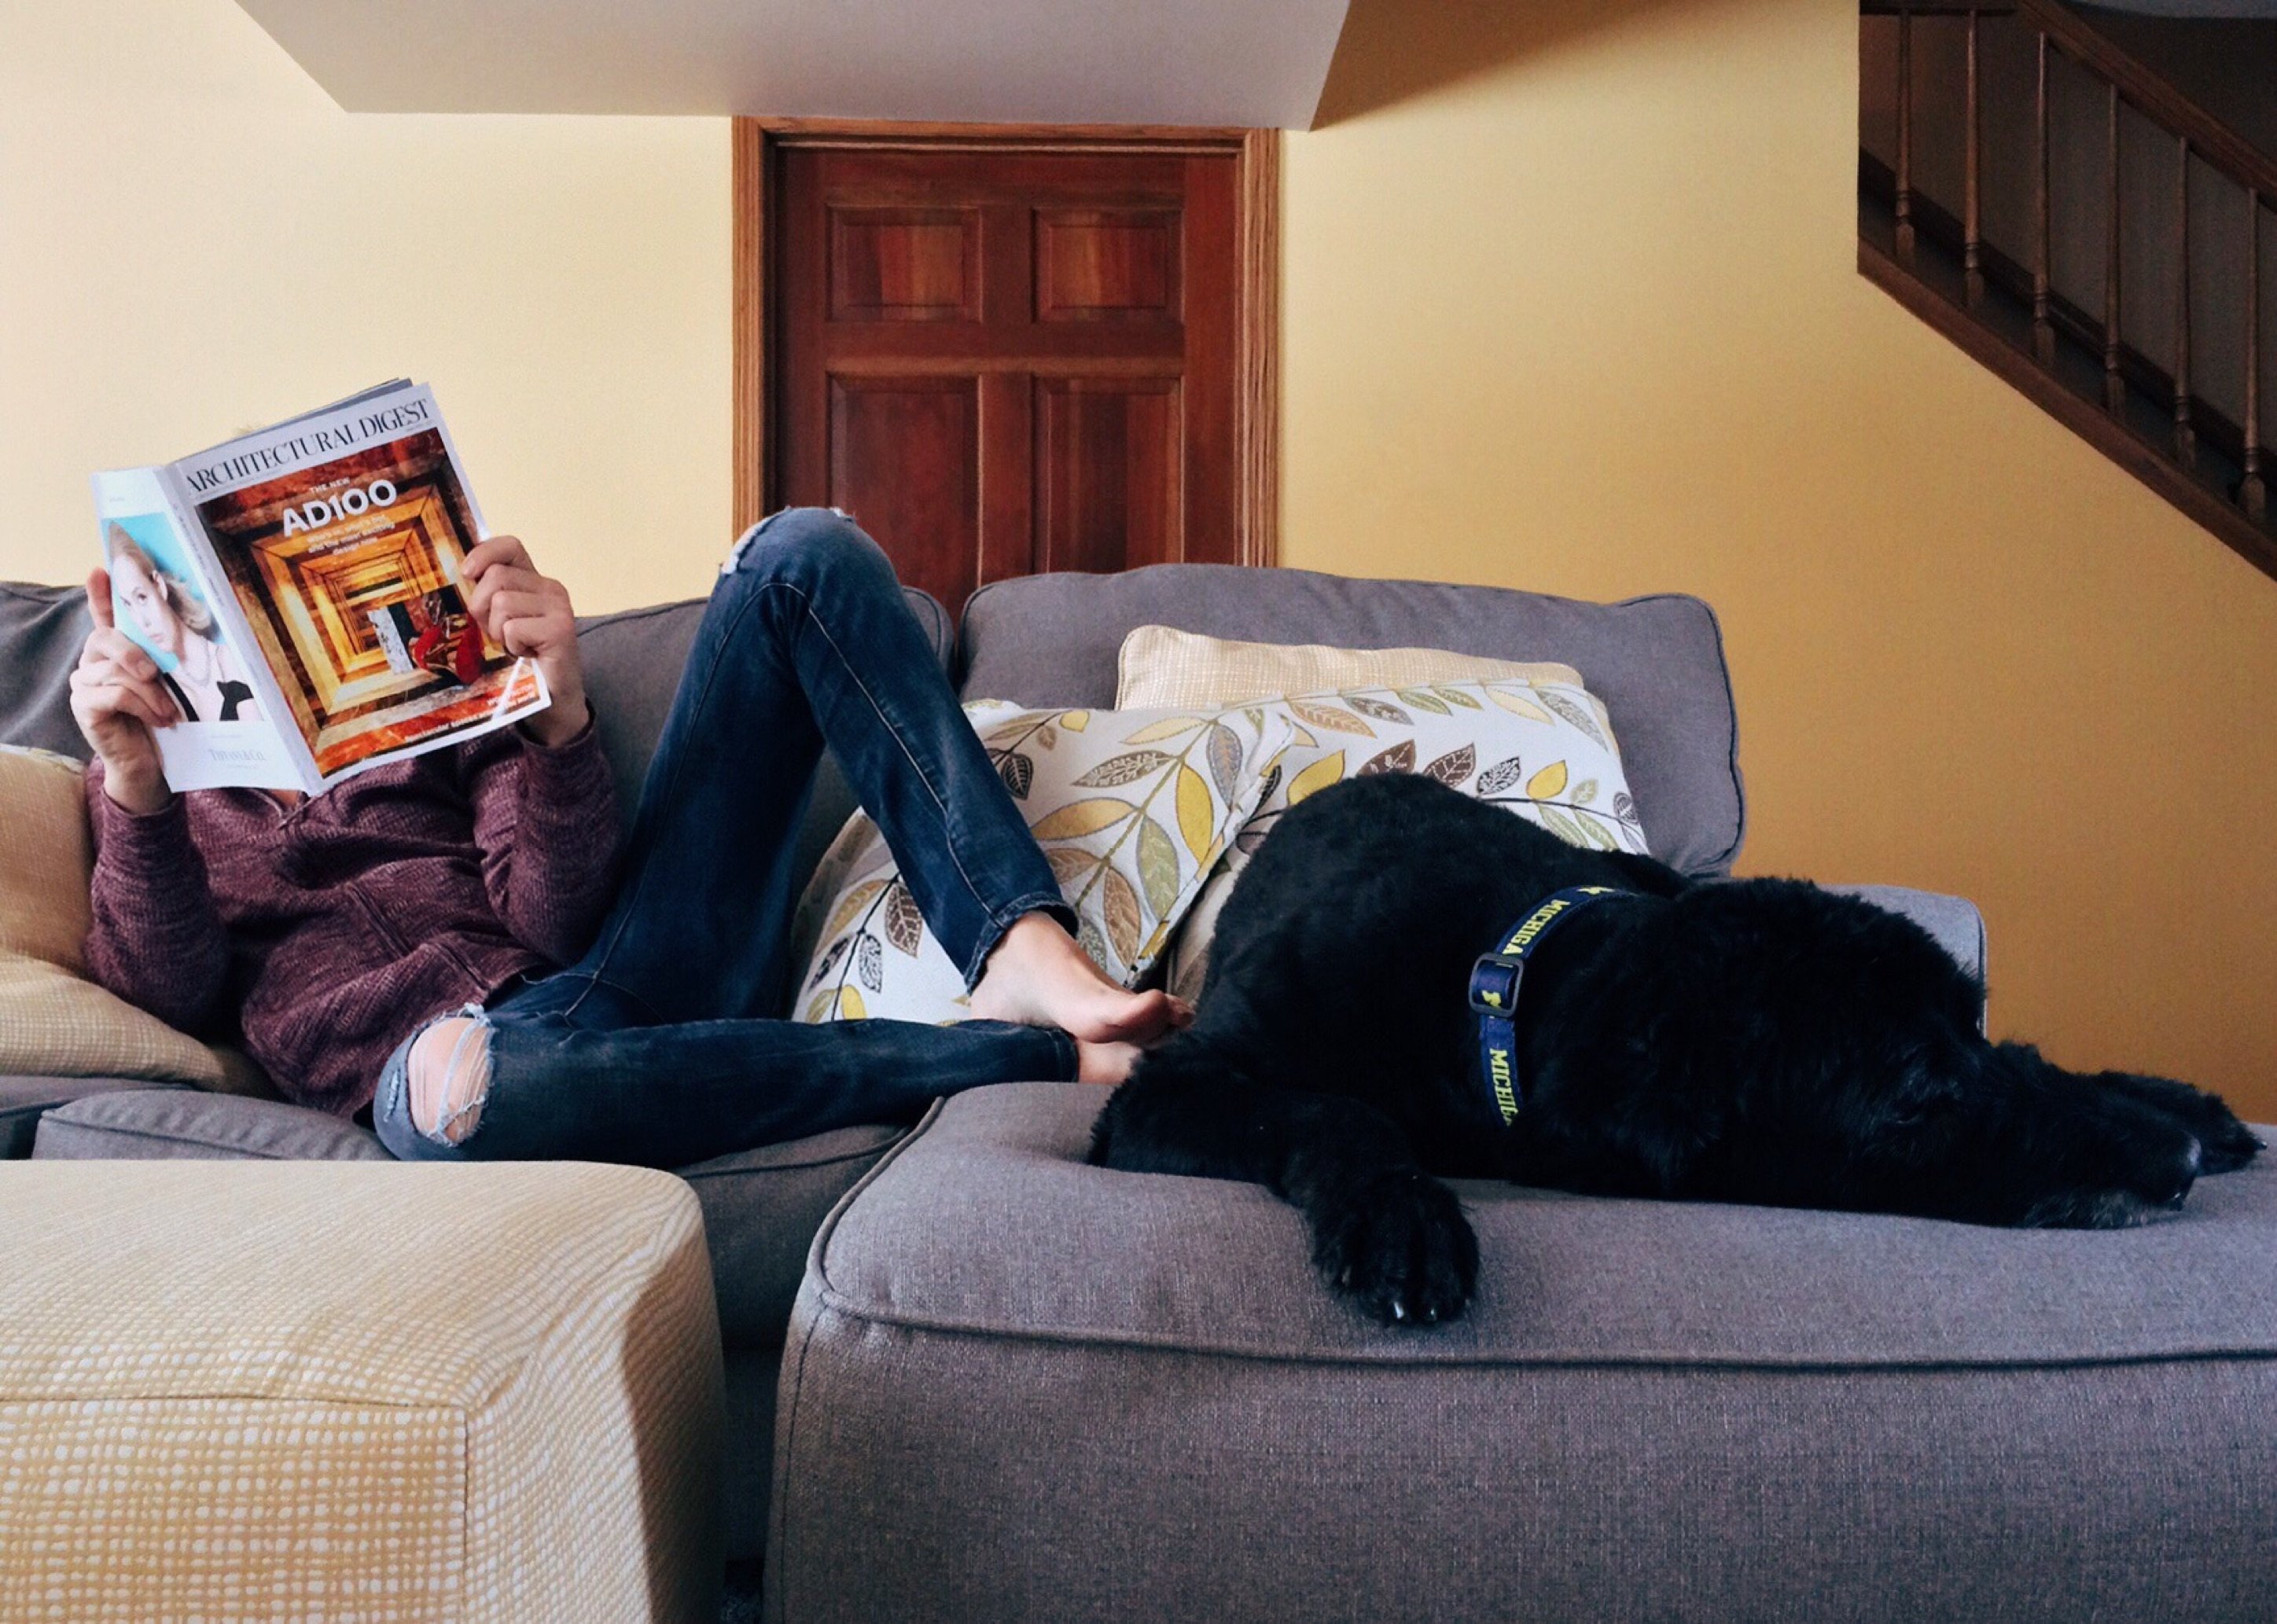 雑誌を読んでいる人のそばで寝ている犬